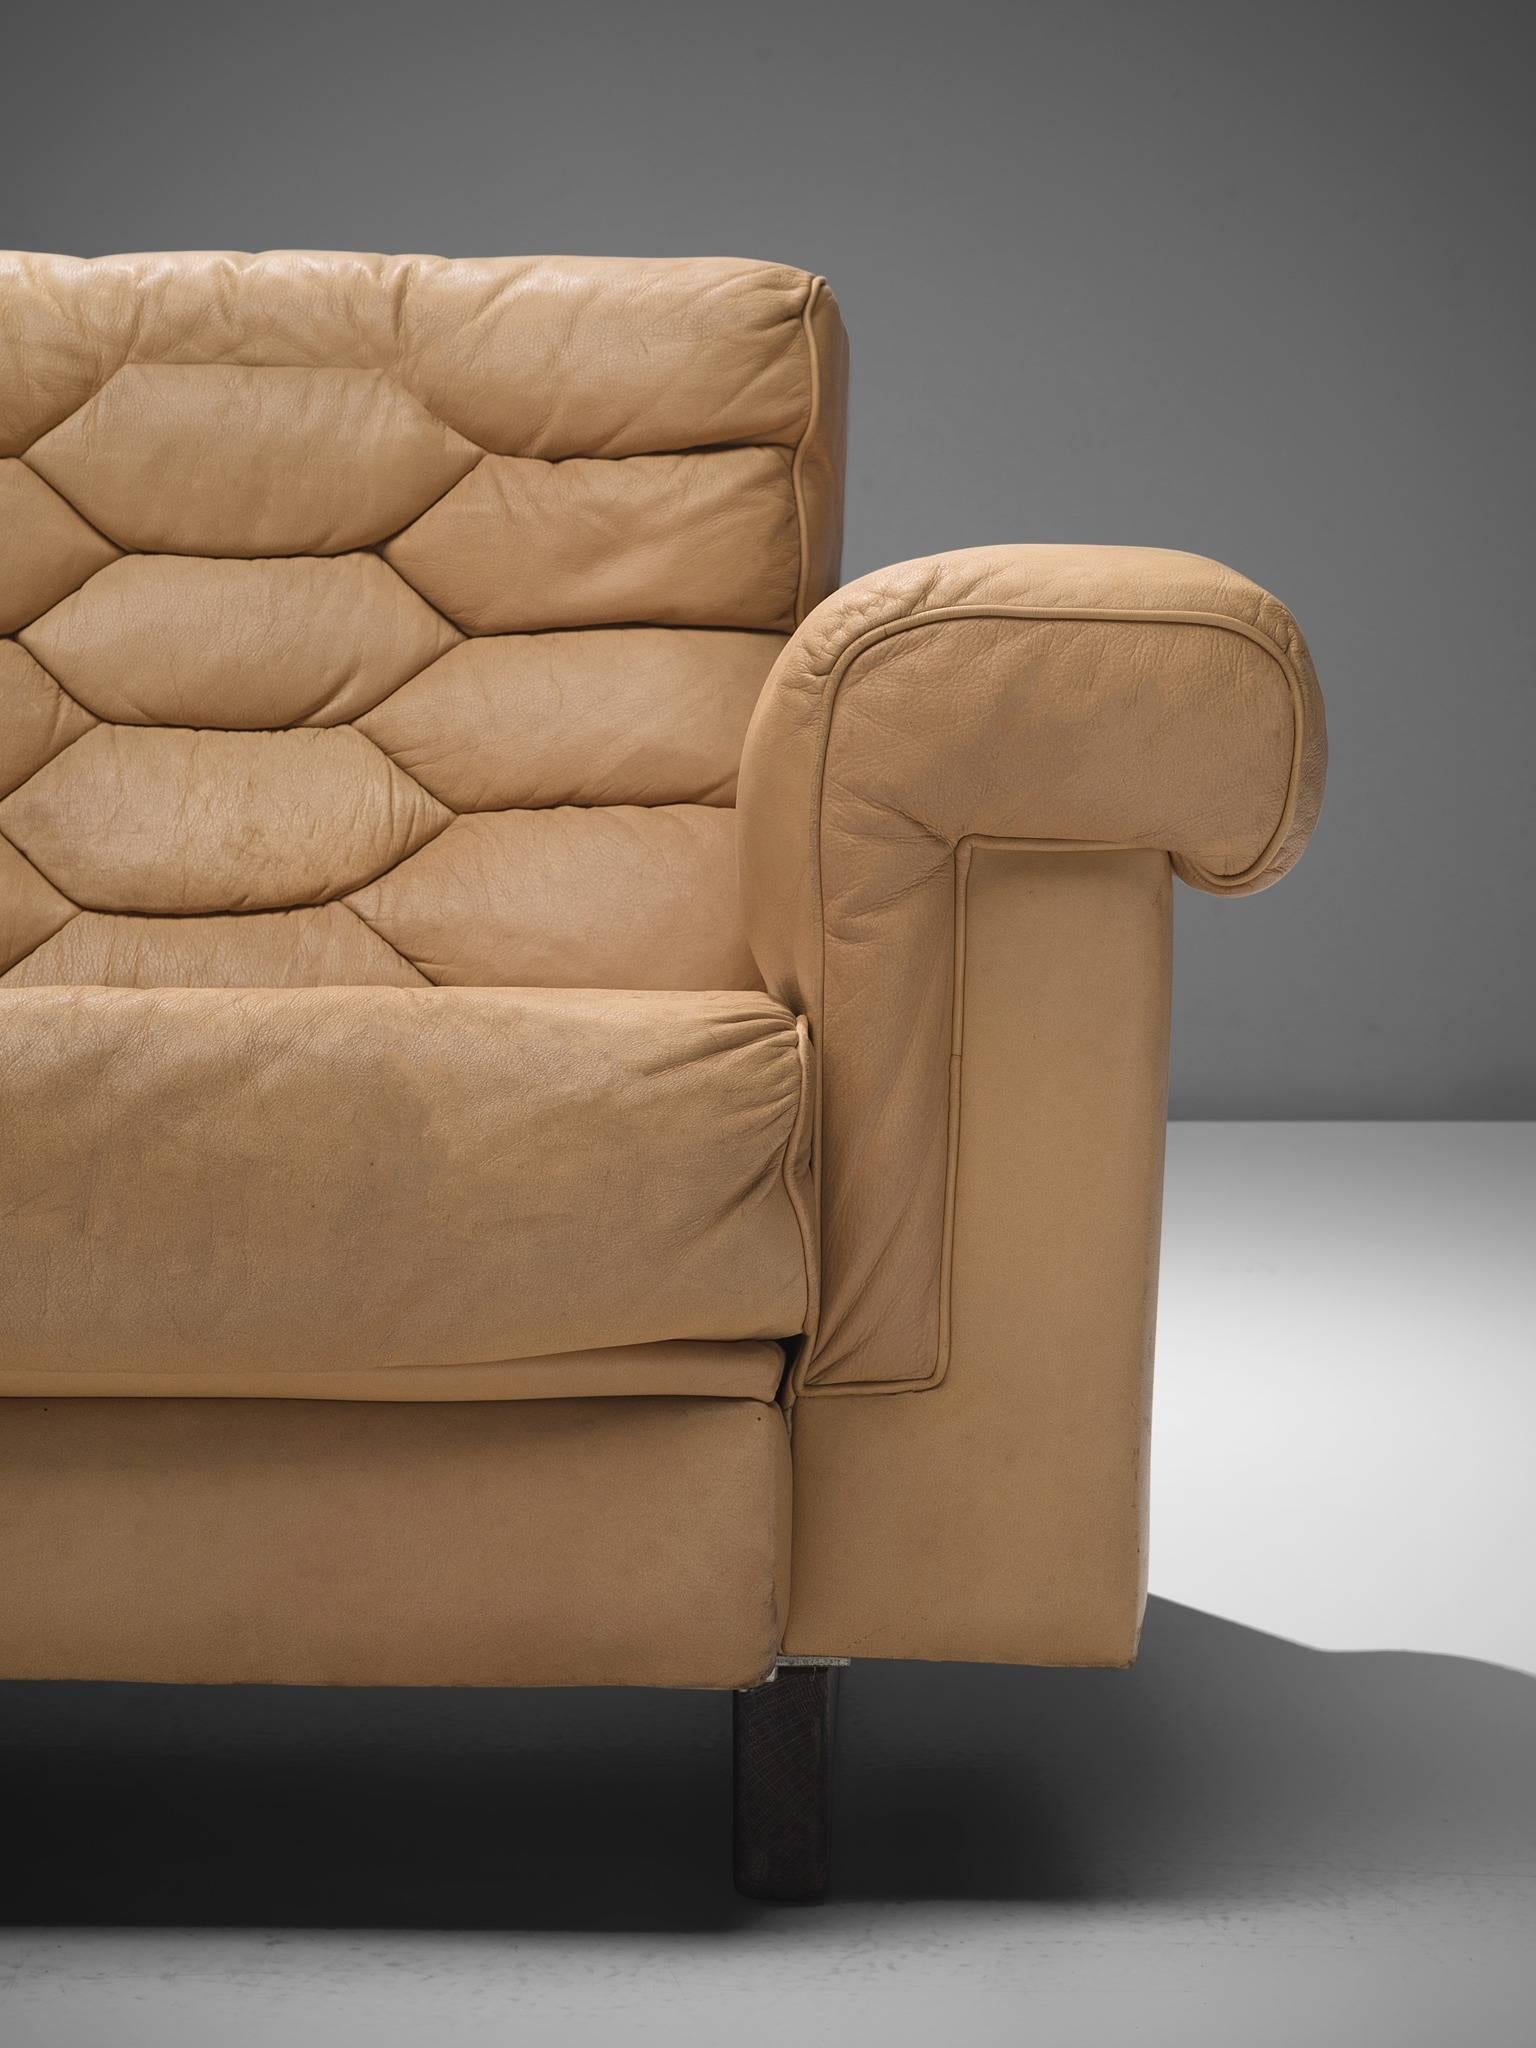 Late 20th Century De Sede Four-Seat Leather Cognac Sofa